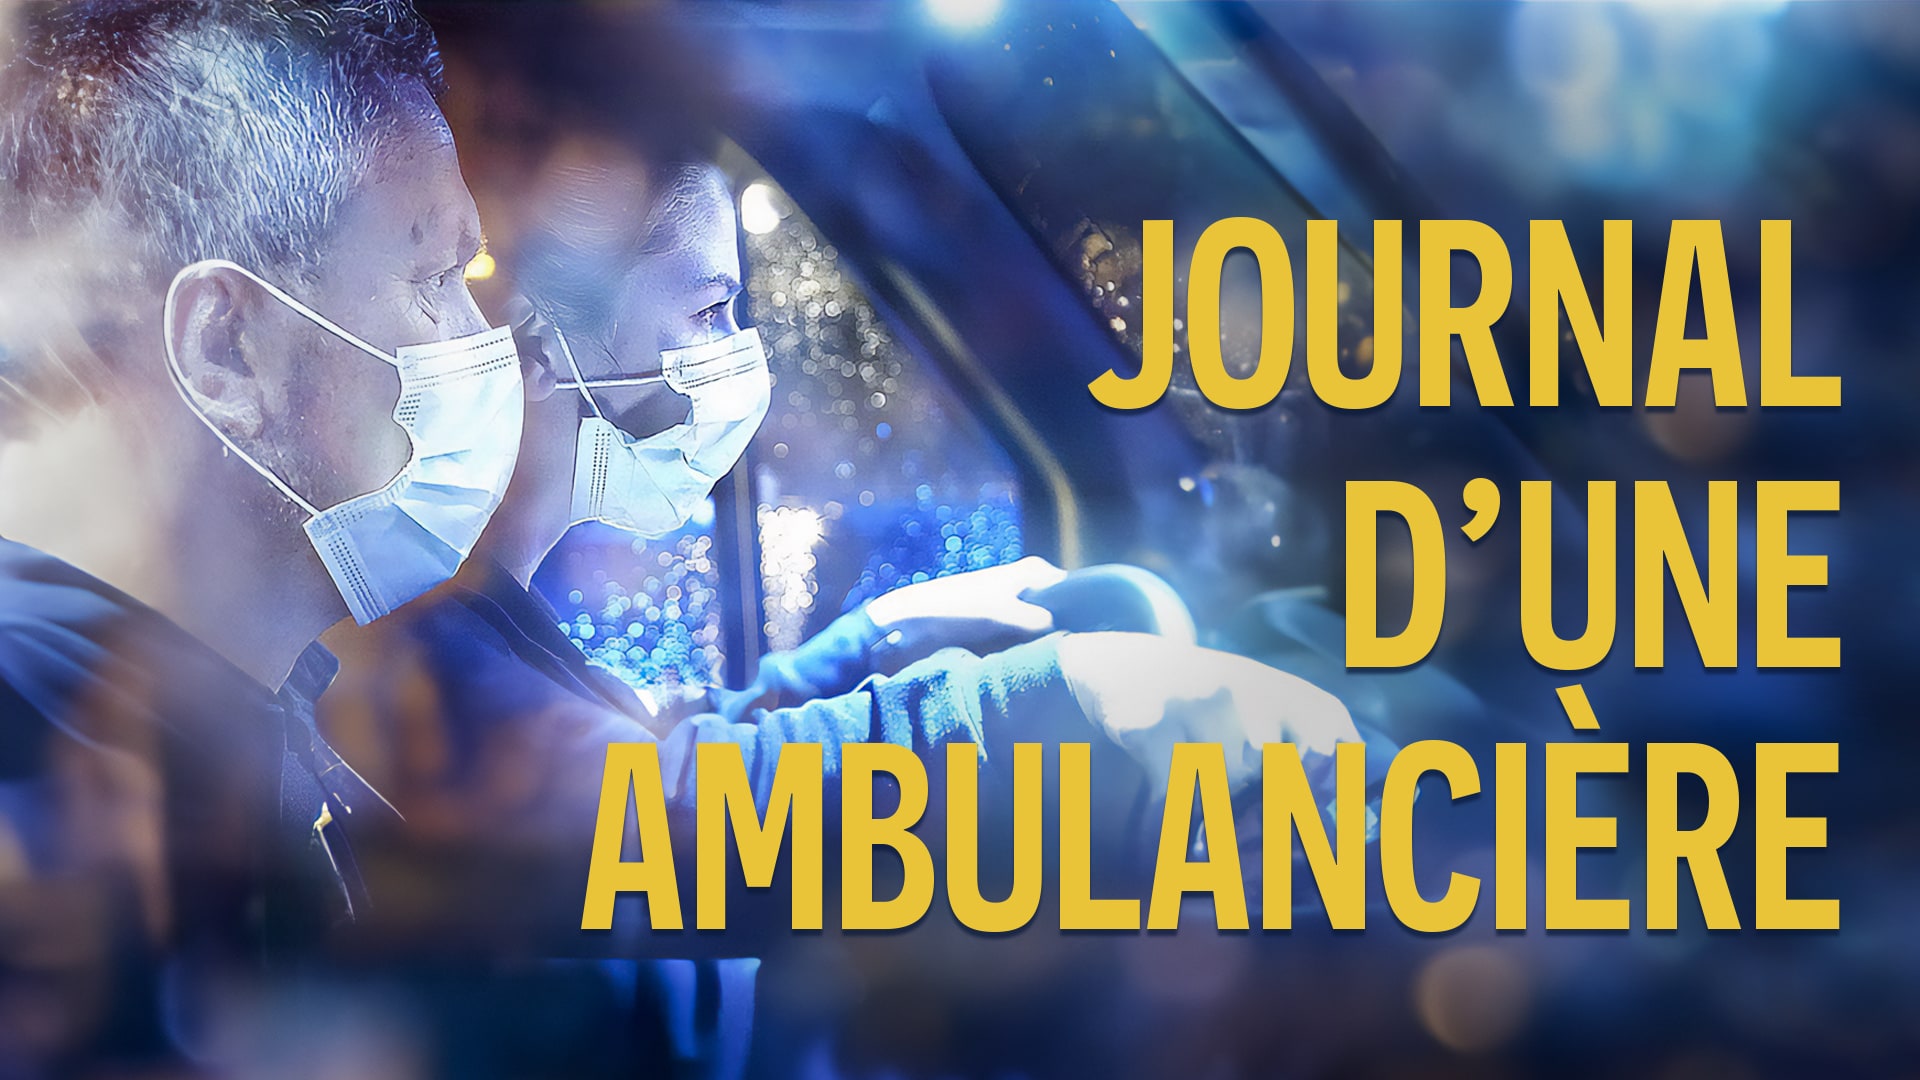 Journal d'une ambulancière